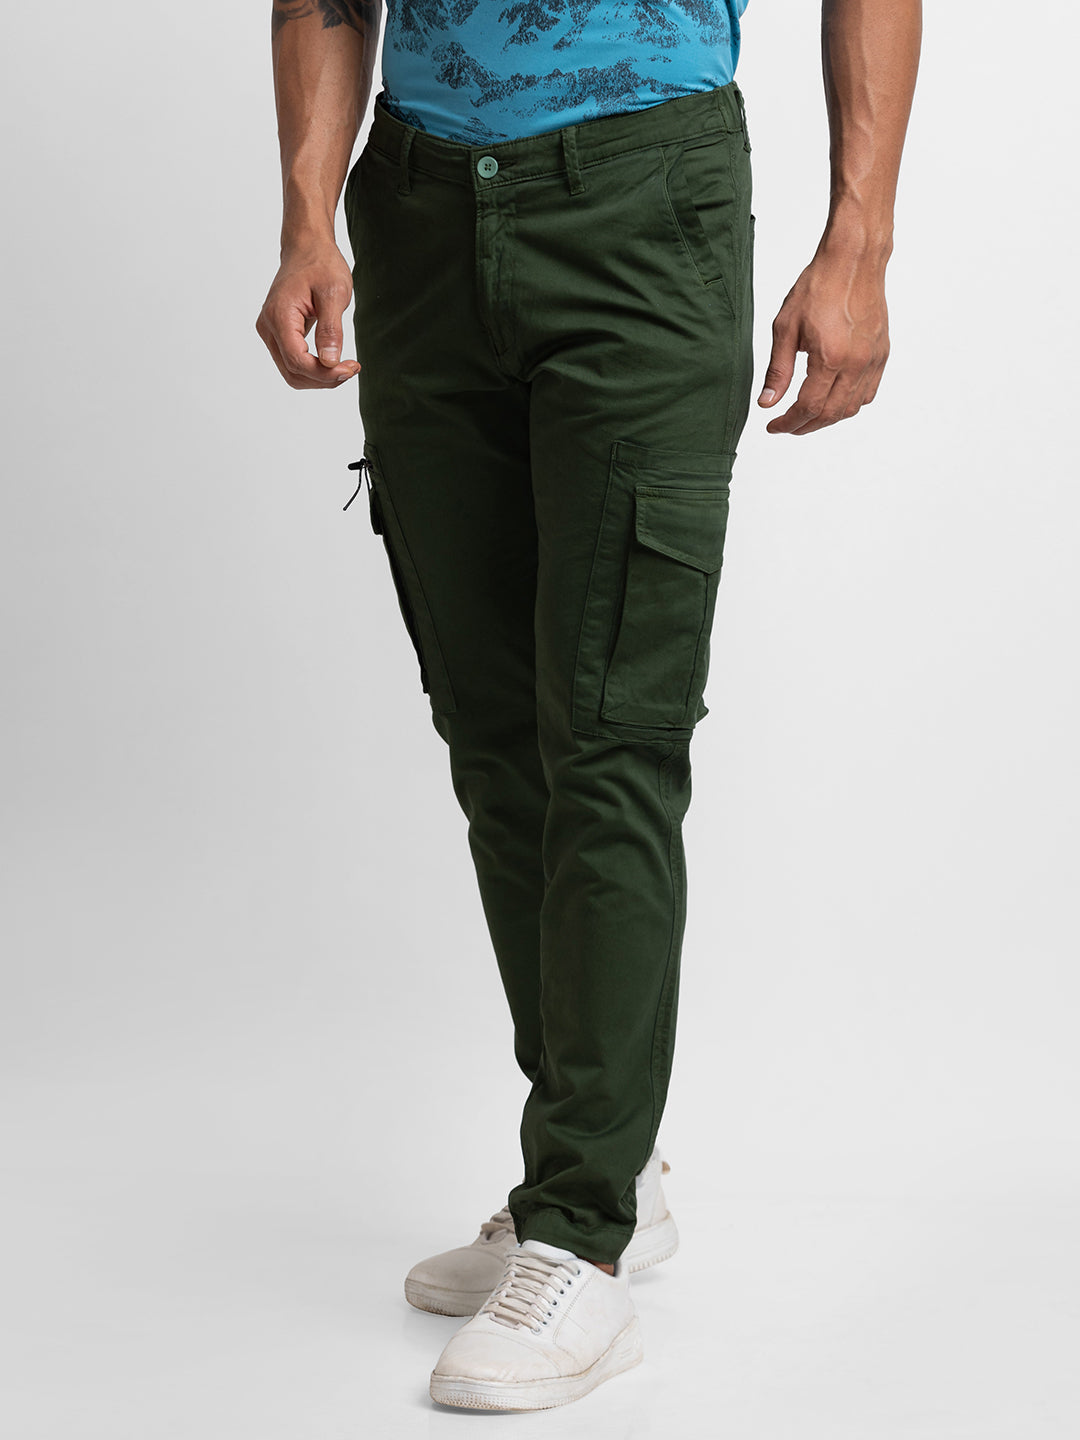 Polo Ralph Lauren SLIM FIT PANTS - Cargo trousers - british olive/olive -  Zalando.de